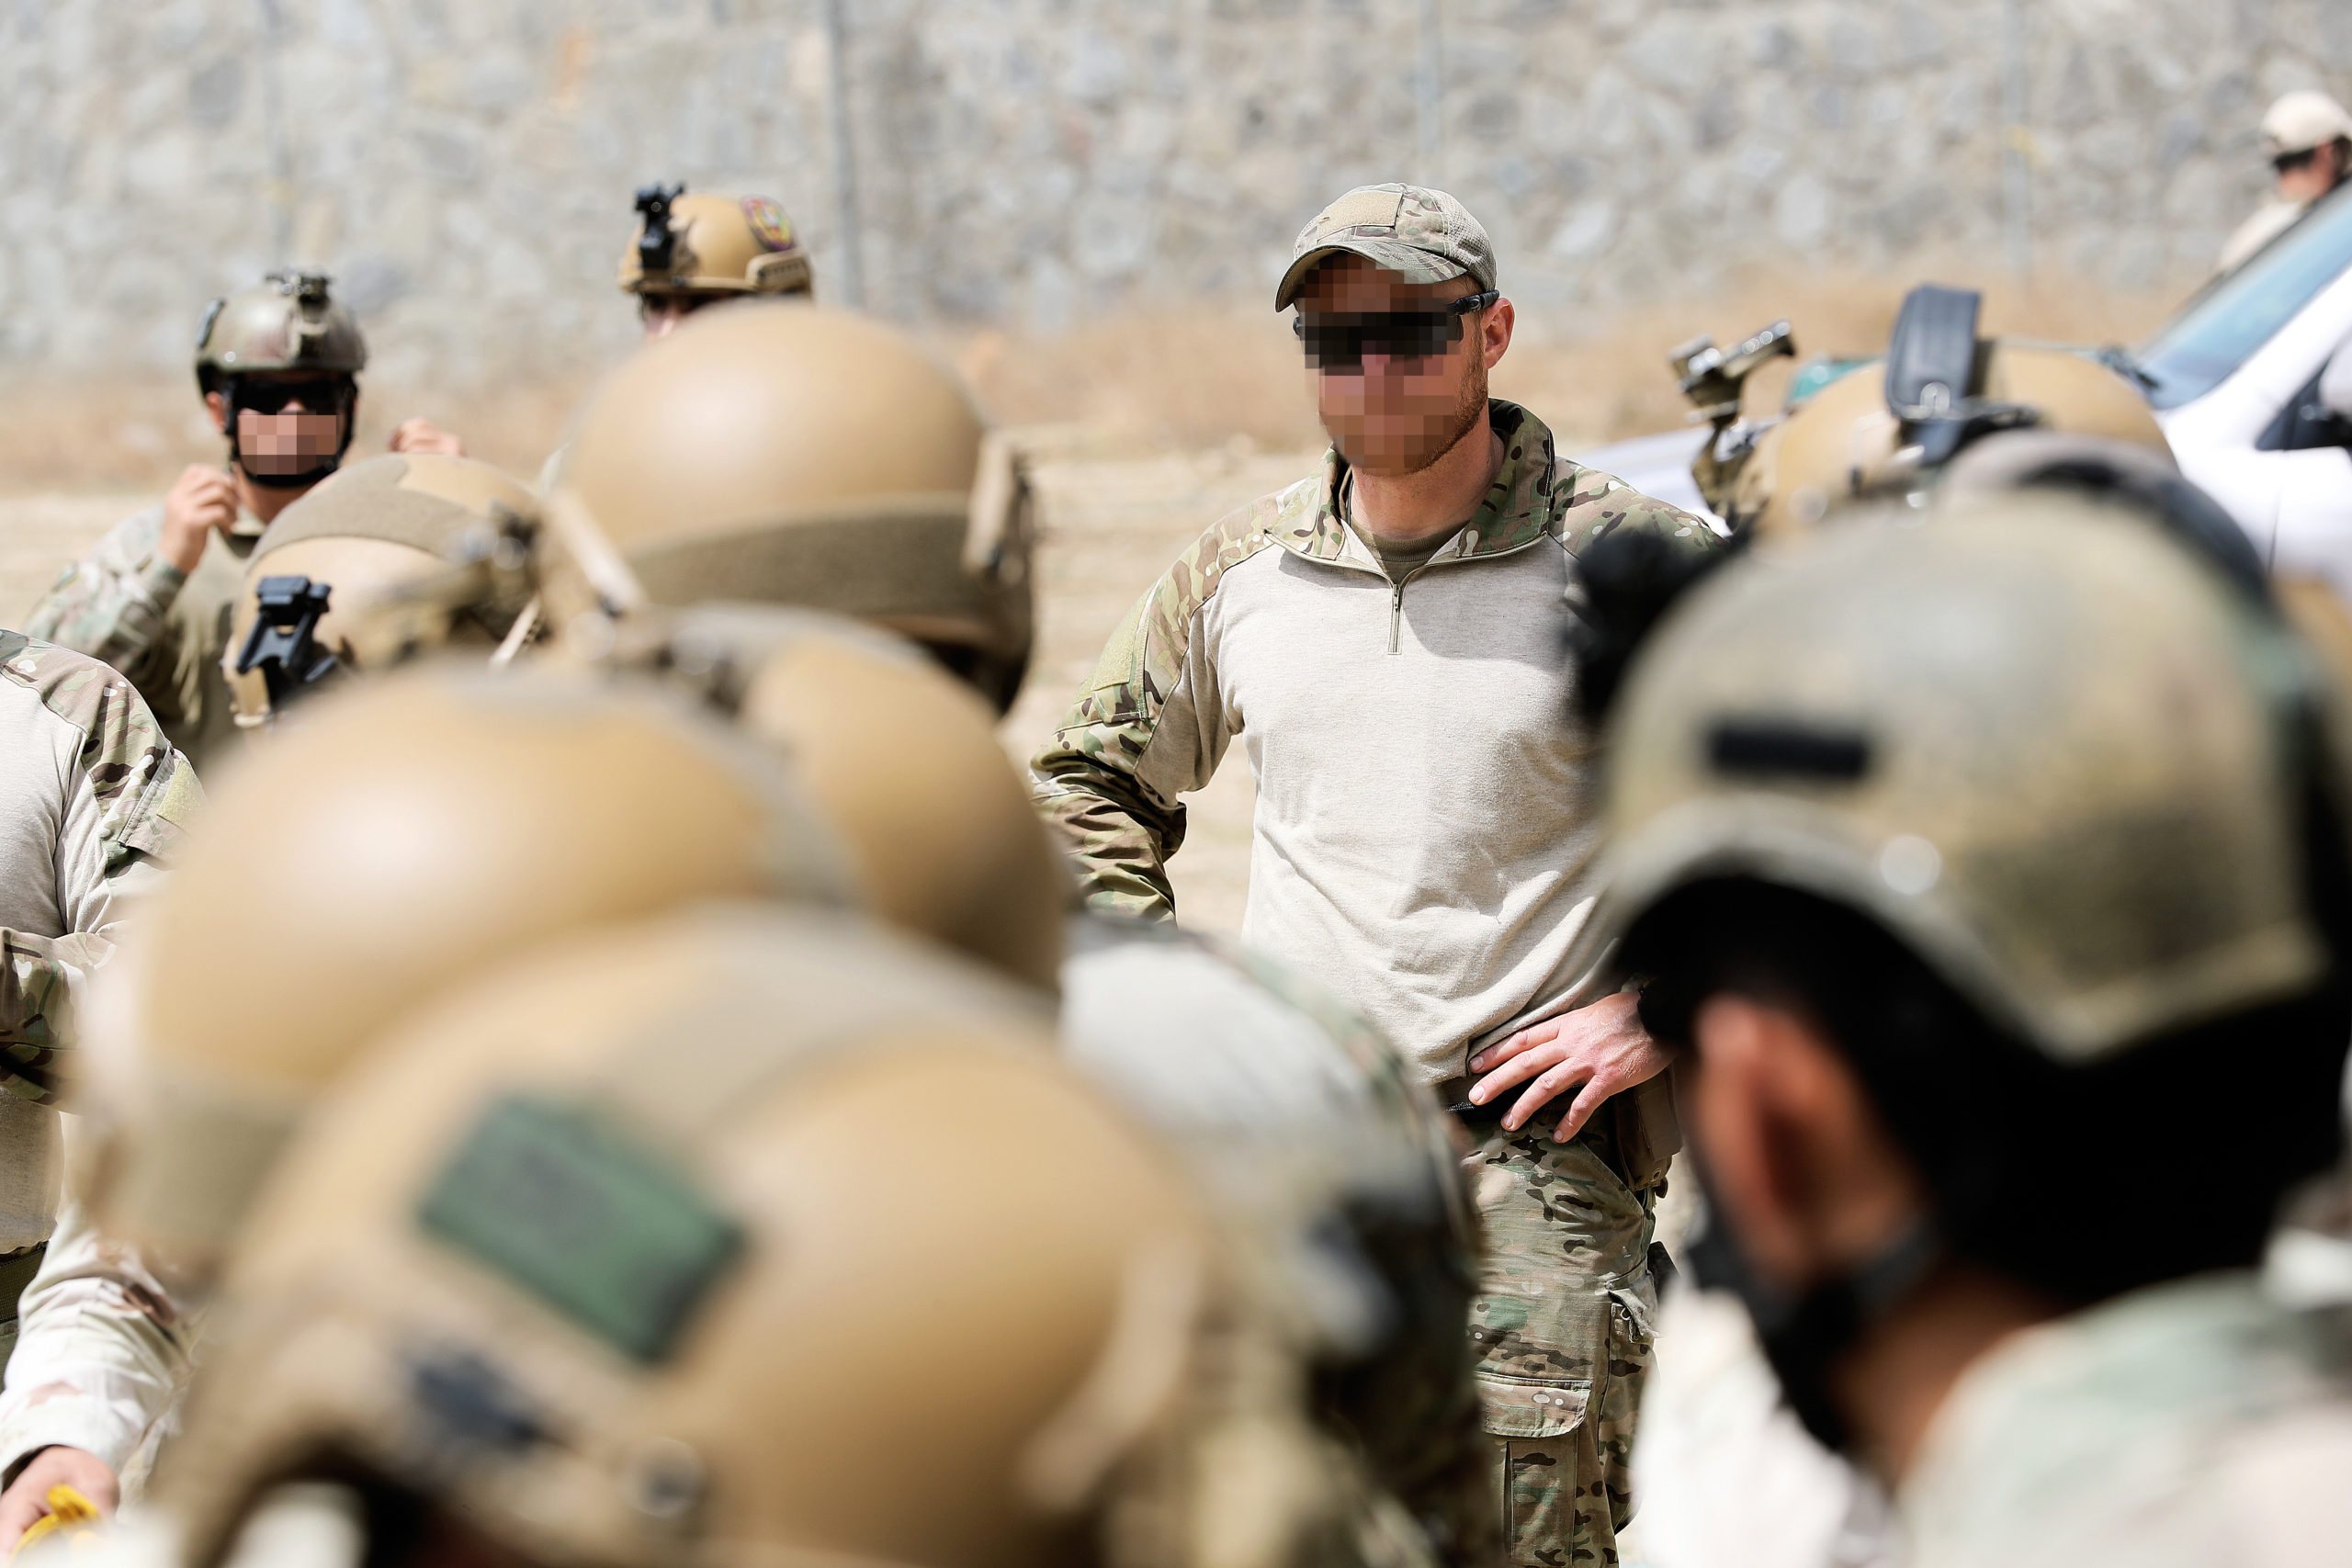 En rekke soldathjelmer i forgrunnen av bildet, i bakgrunnen ses en soldat kledd i treningsantrekk.